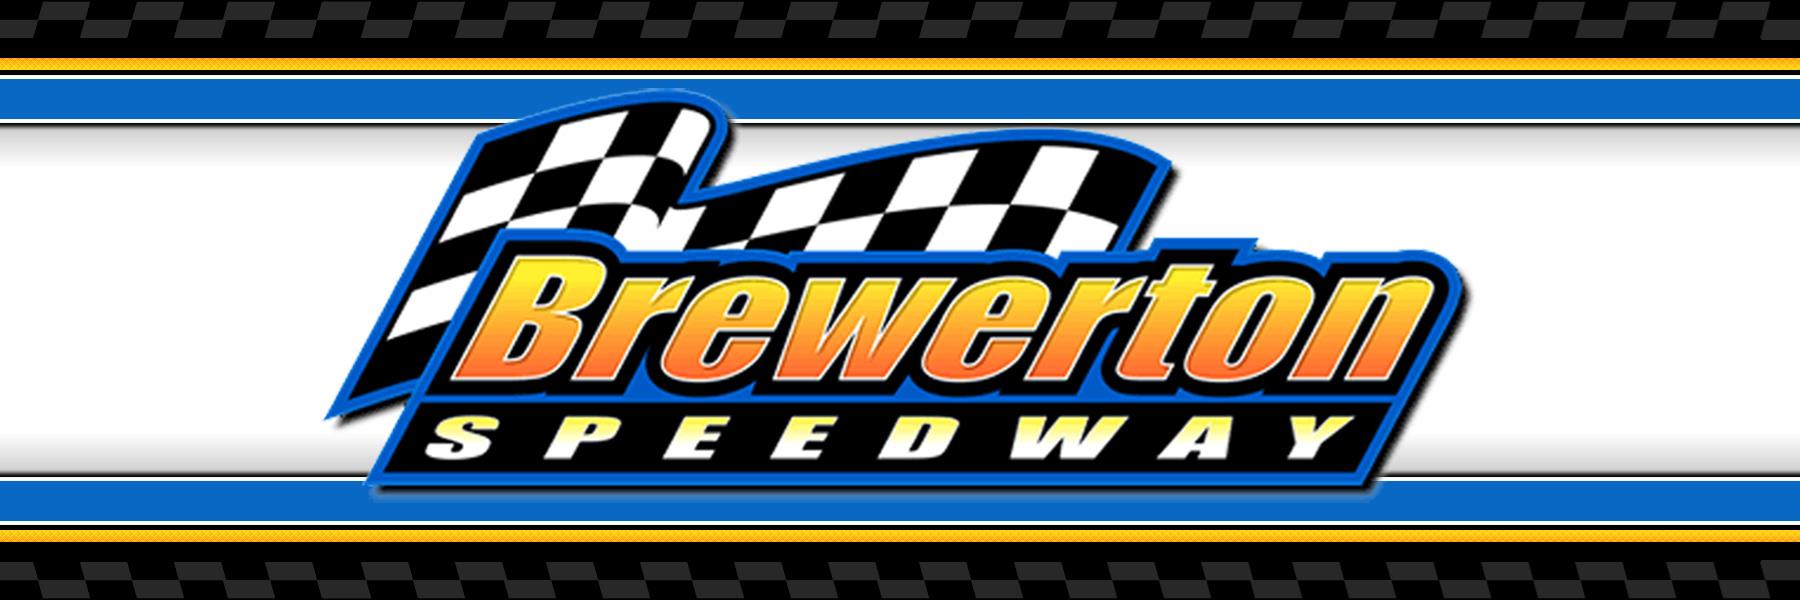 8/19/2022 - Brewerton Speedway